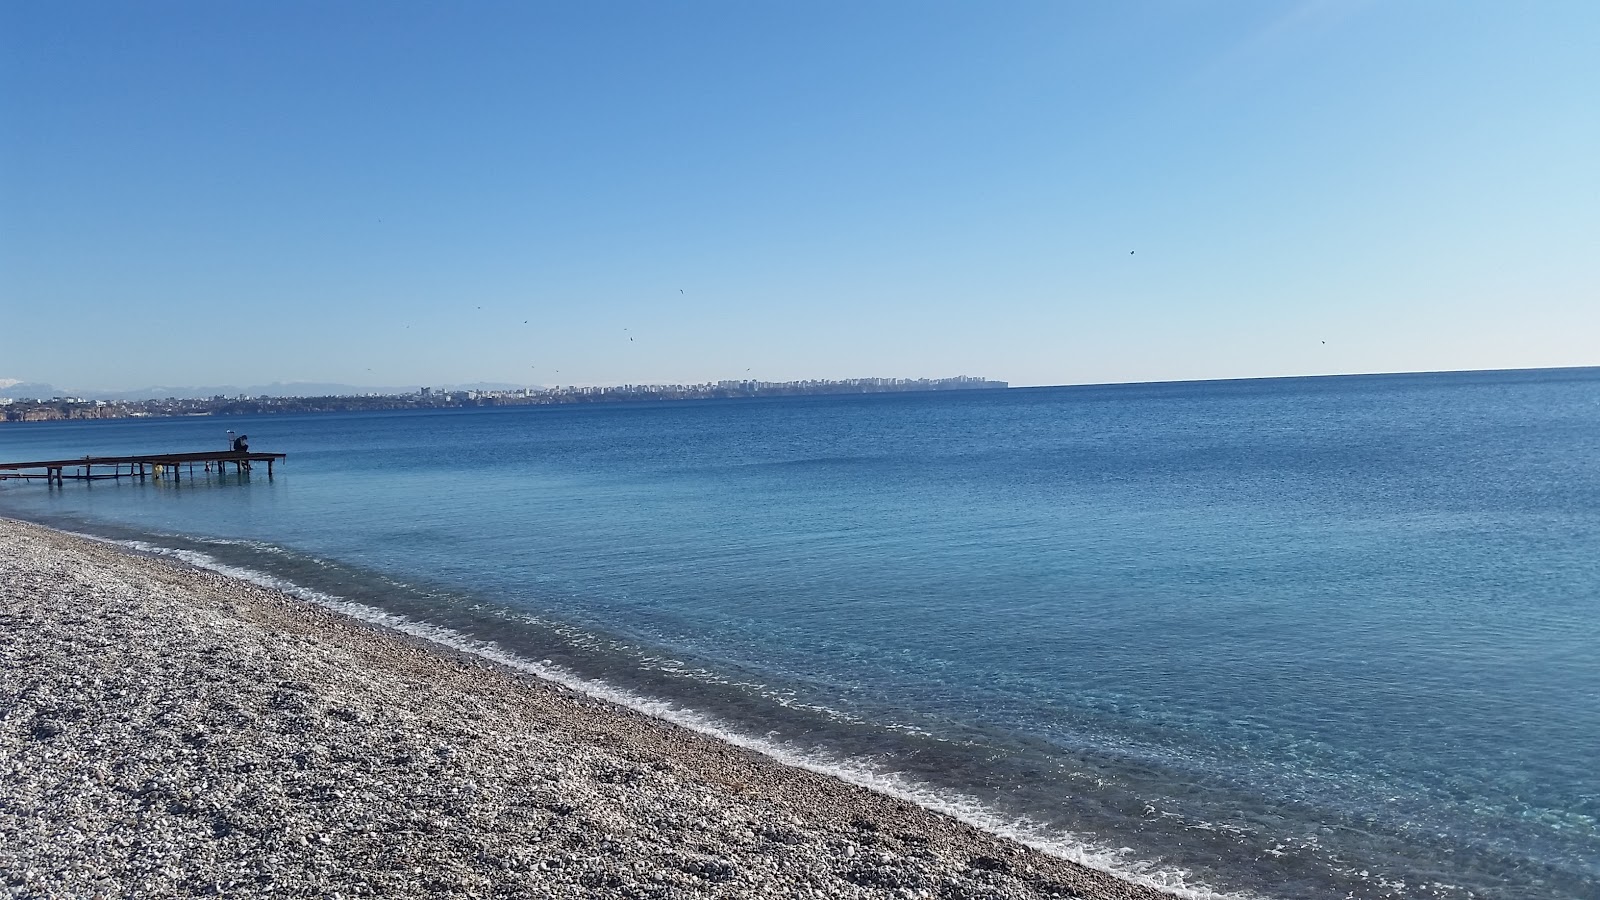 Antalya Plaj II'in fotoğrafı geniş plaj ile birlikte